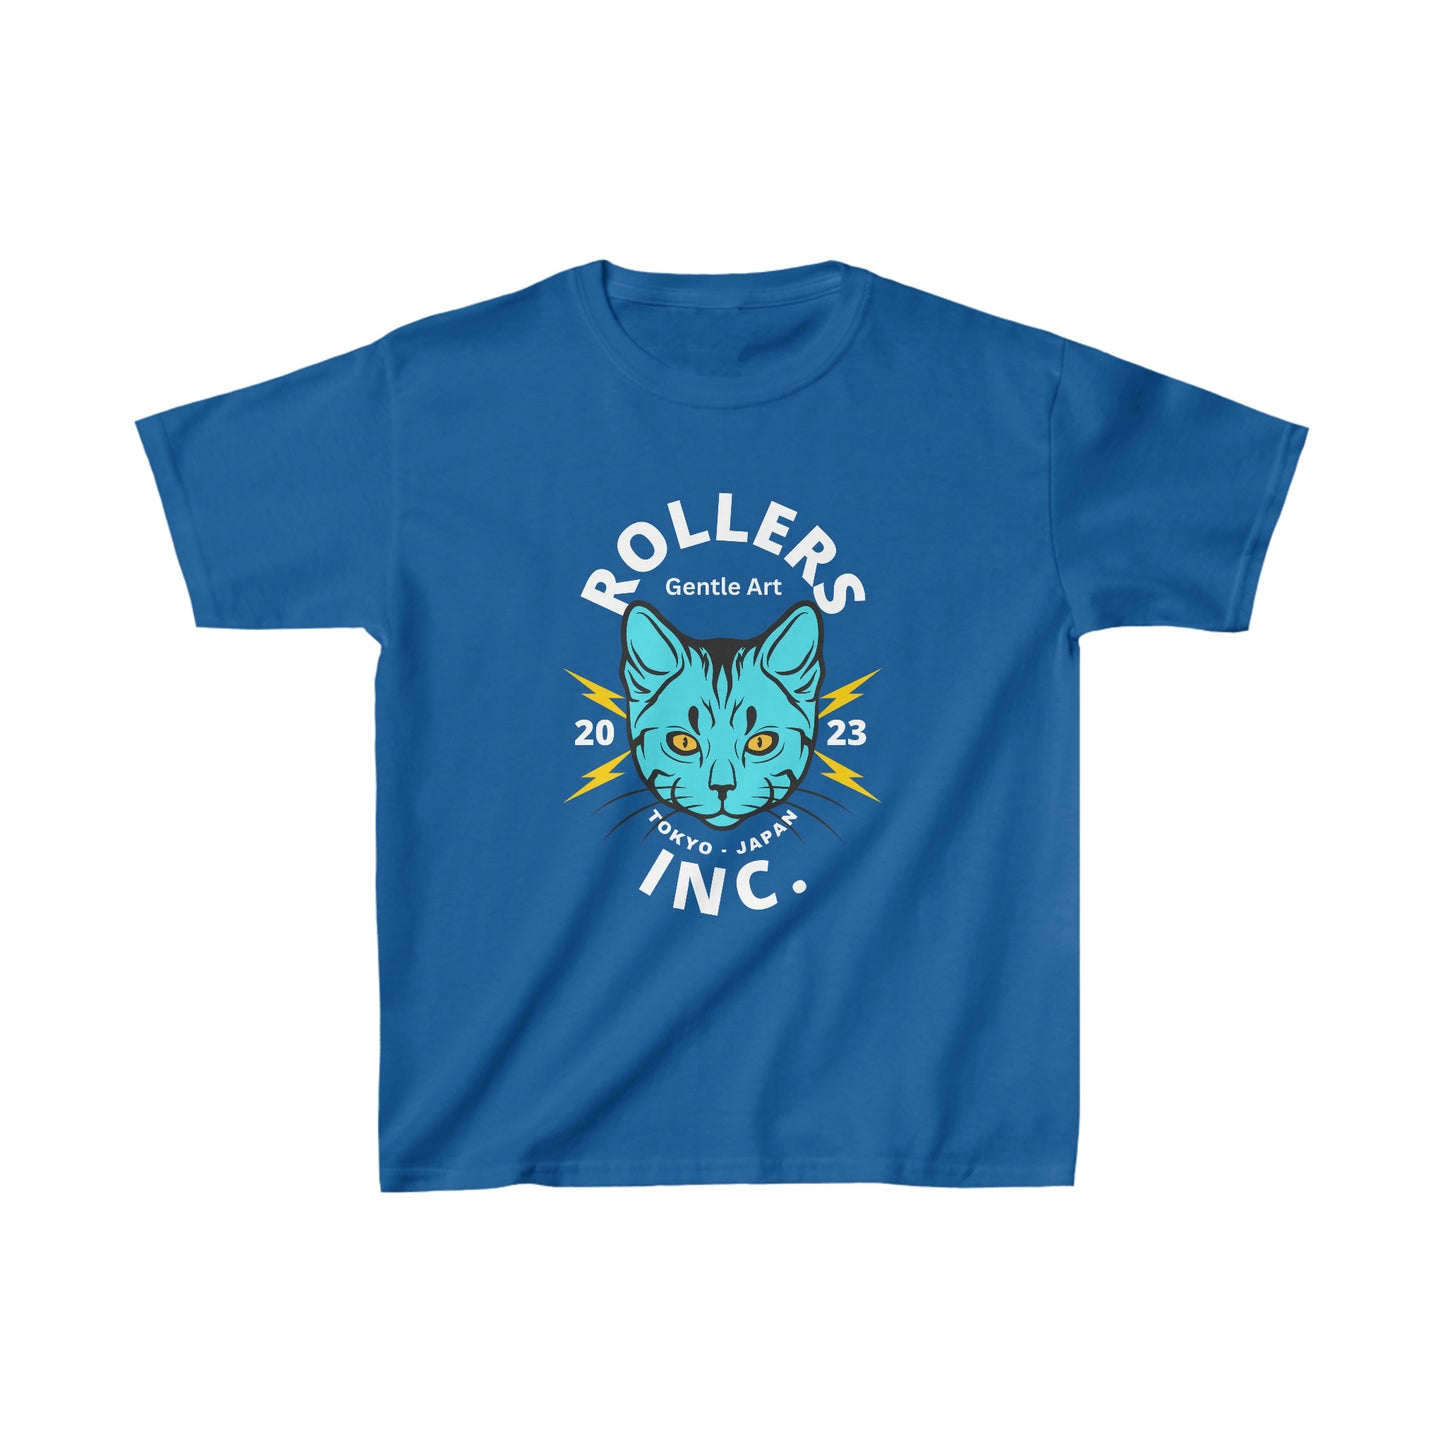 Rollers Inc Japan Cat Youth Jiu Jitsu T-Shirt and Jiu Jitsu Apparel